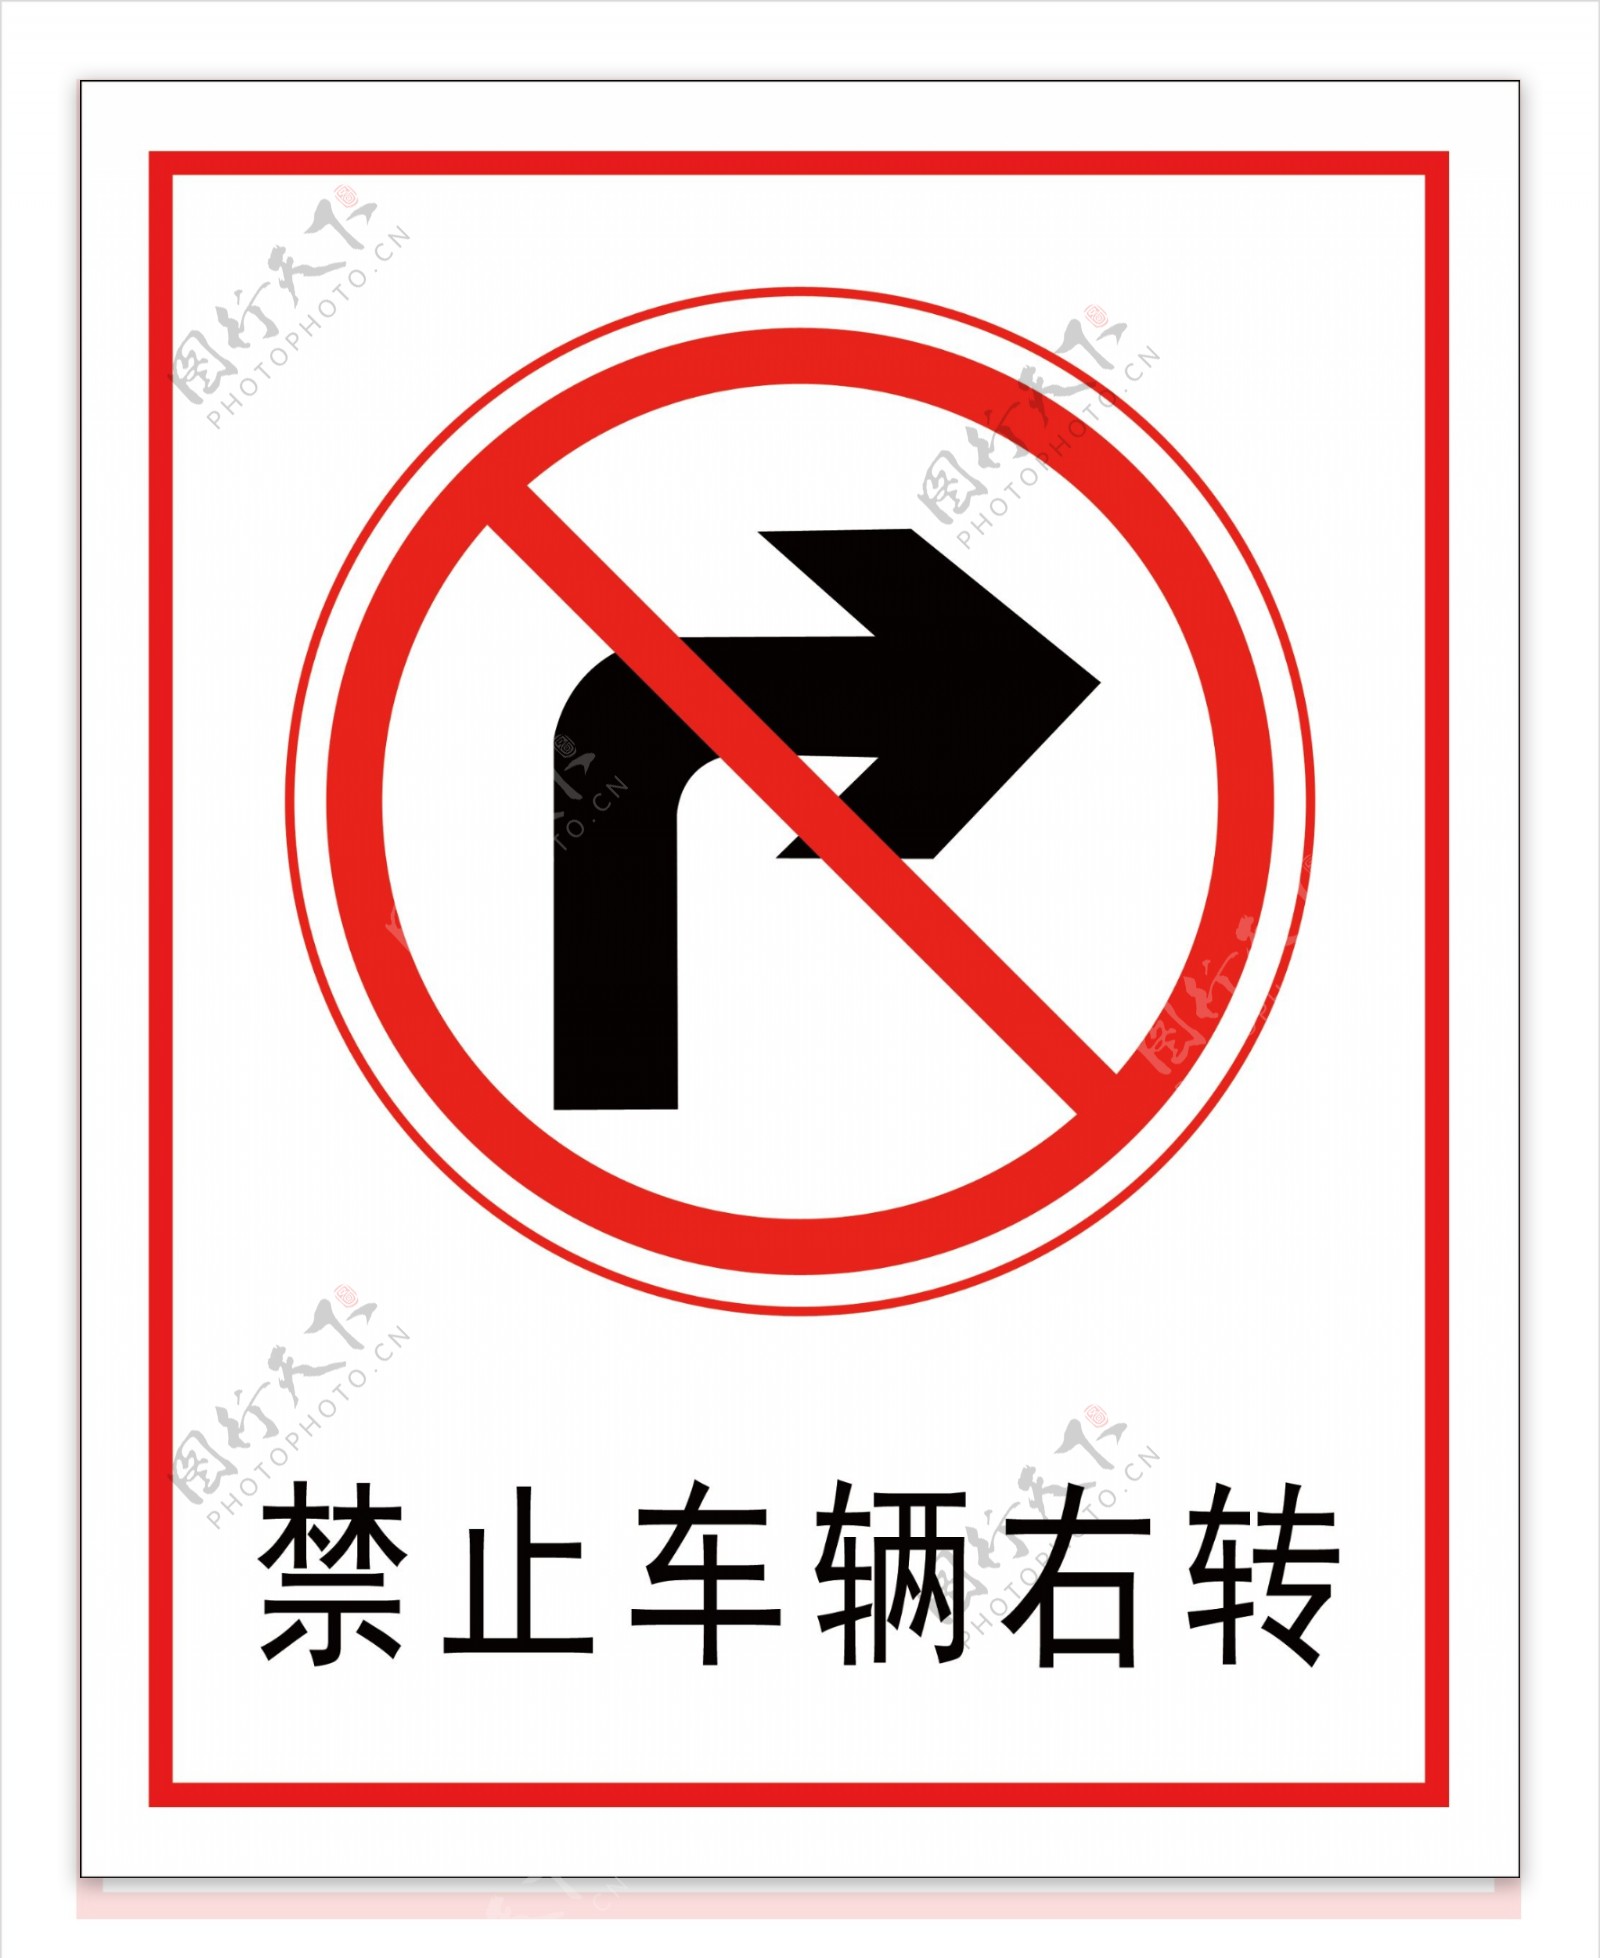 禁止车辆右转